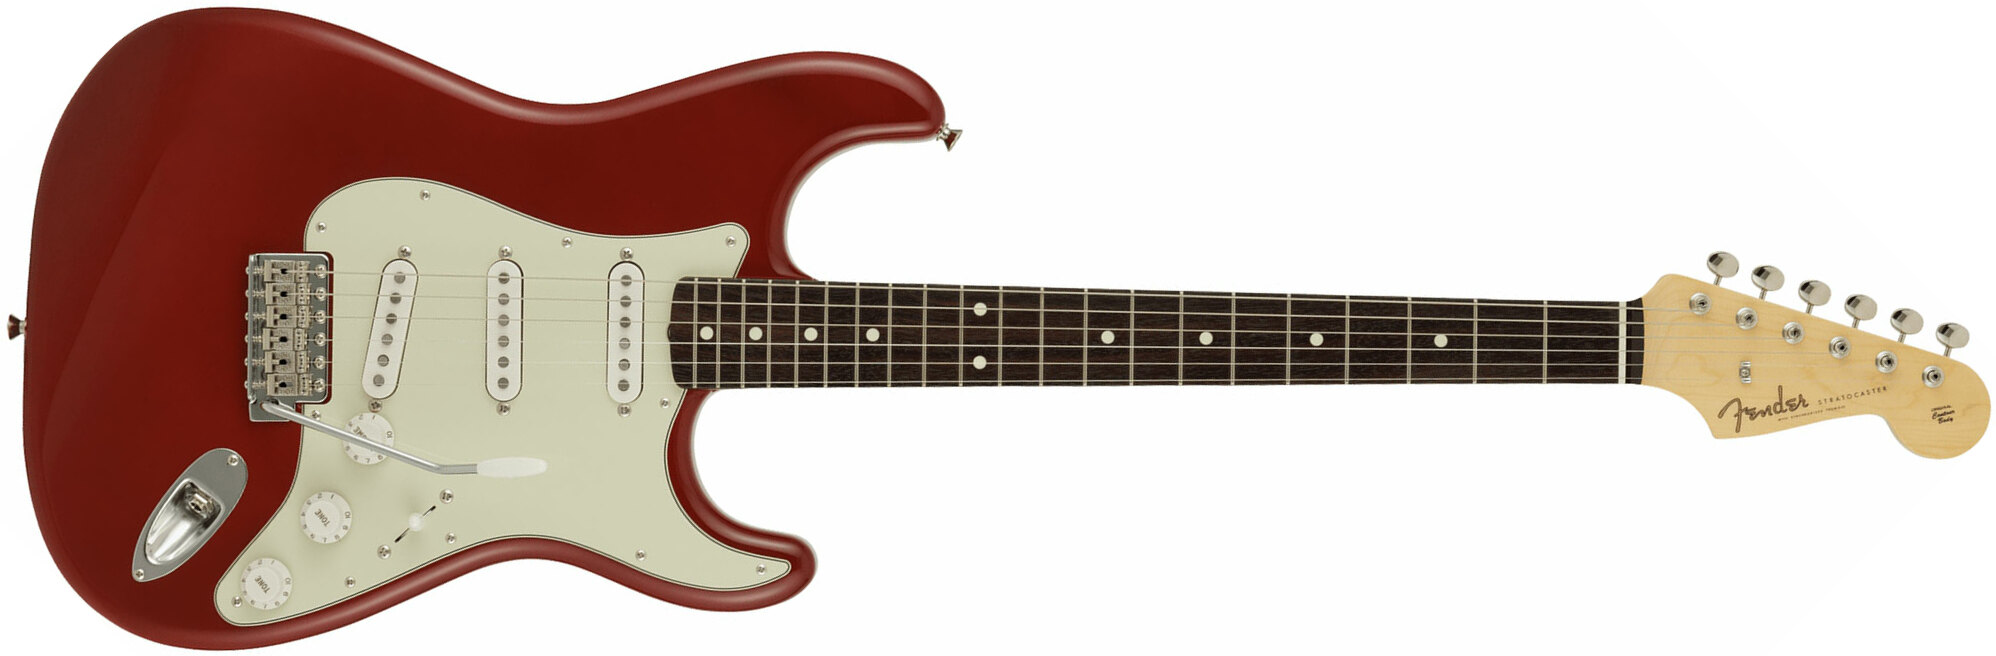 Fender Strat Traditional 60s Mij Jap 3s Trem Rw - Dakota Red Aged - Guitare Électrique Forme Str - Main picture